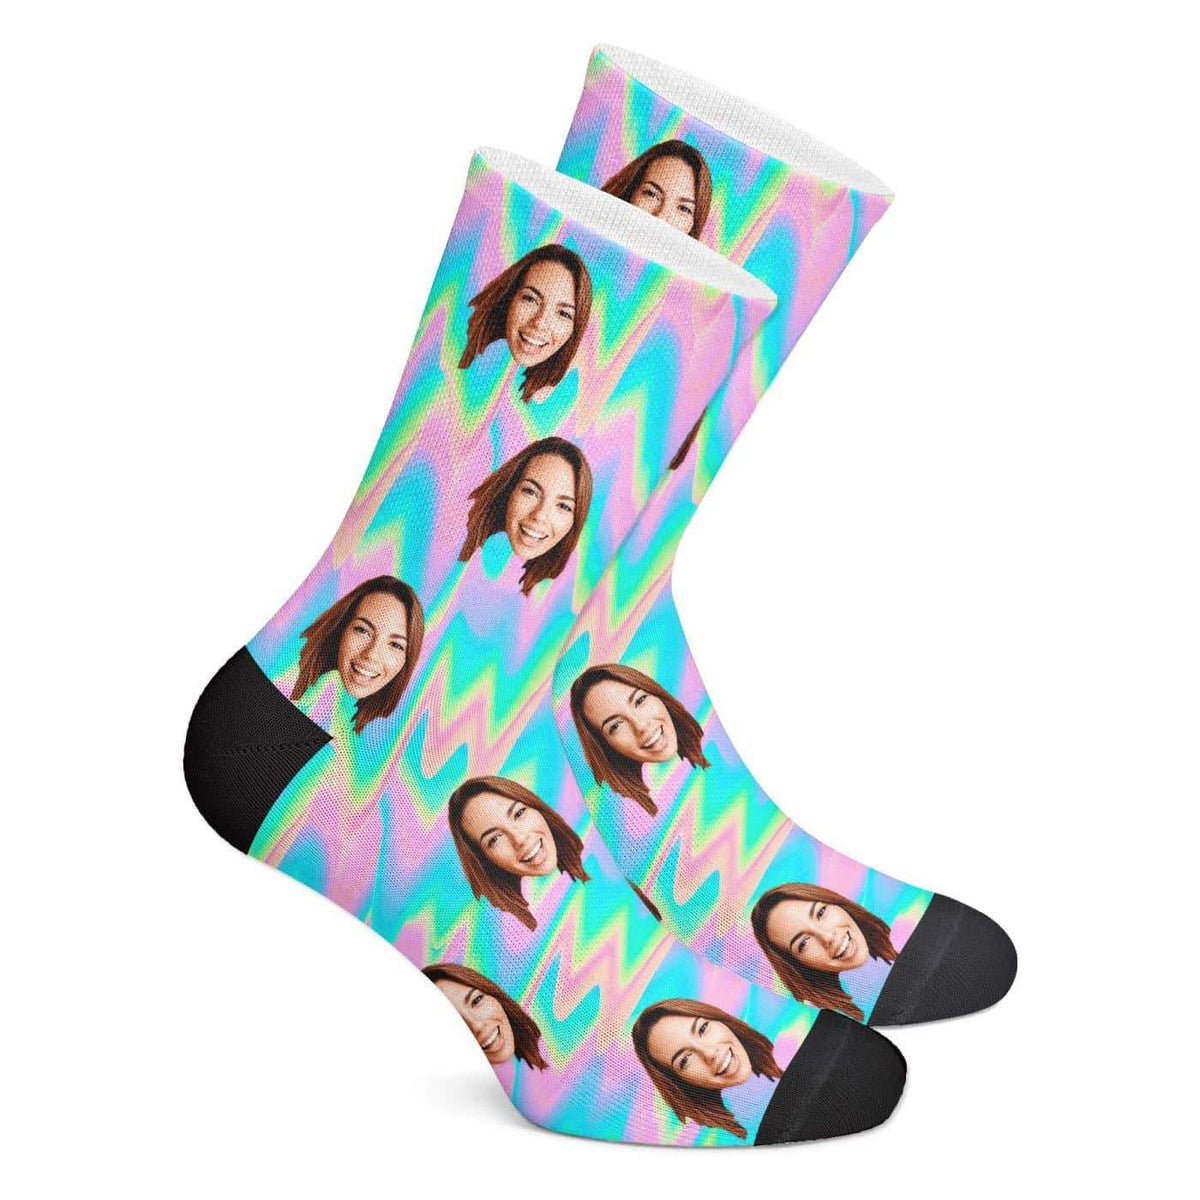 Customized Trippy Socks